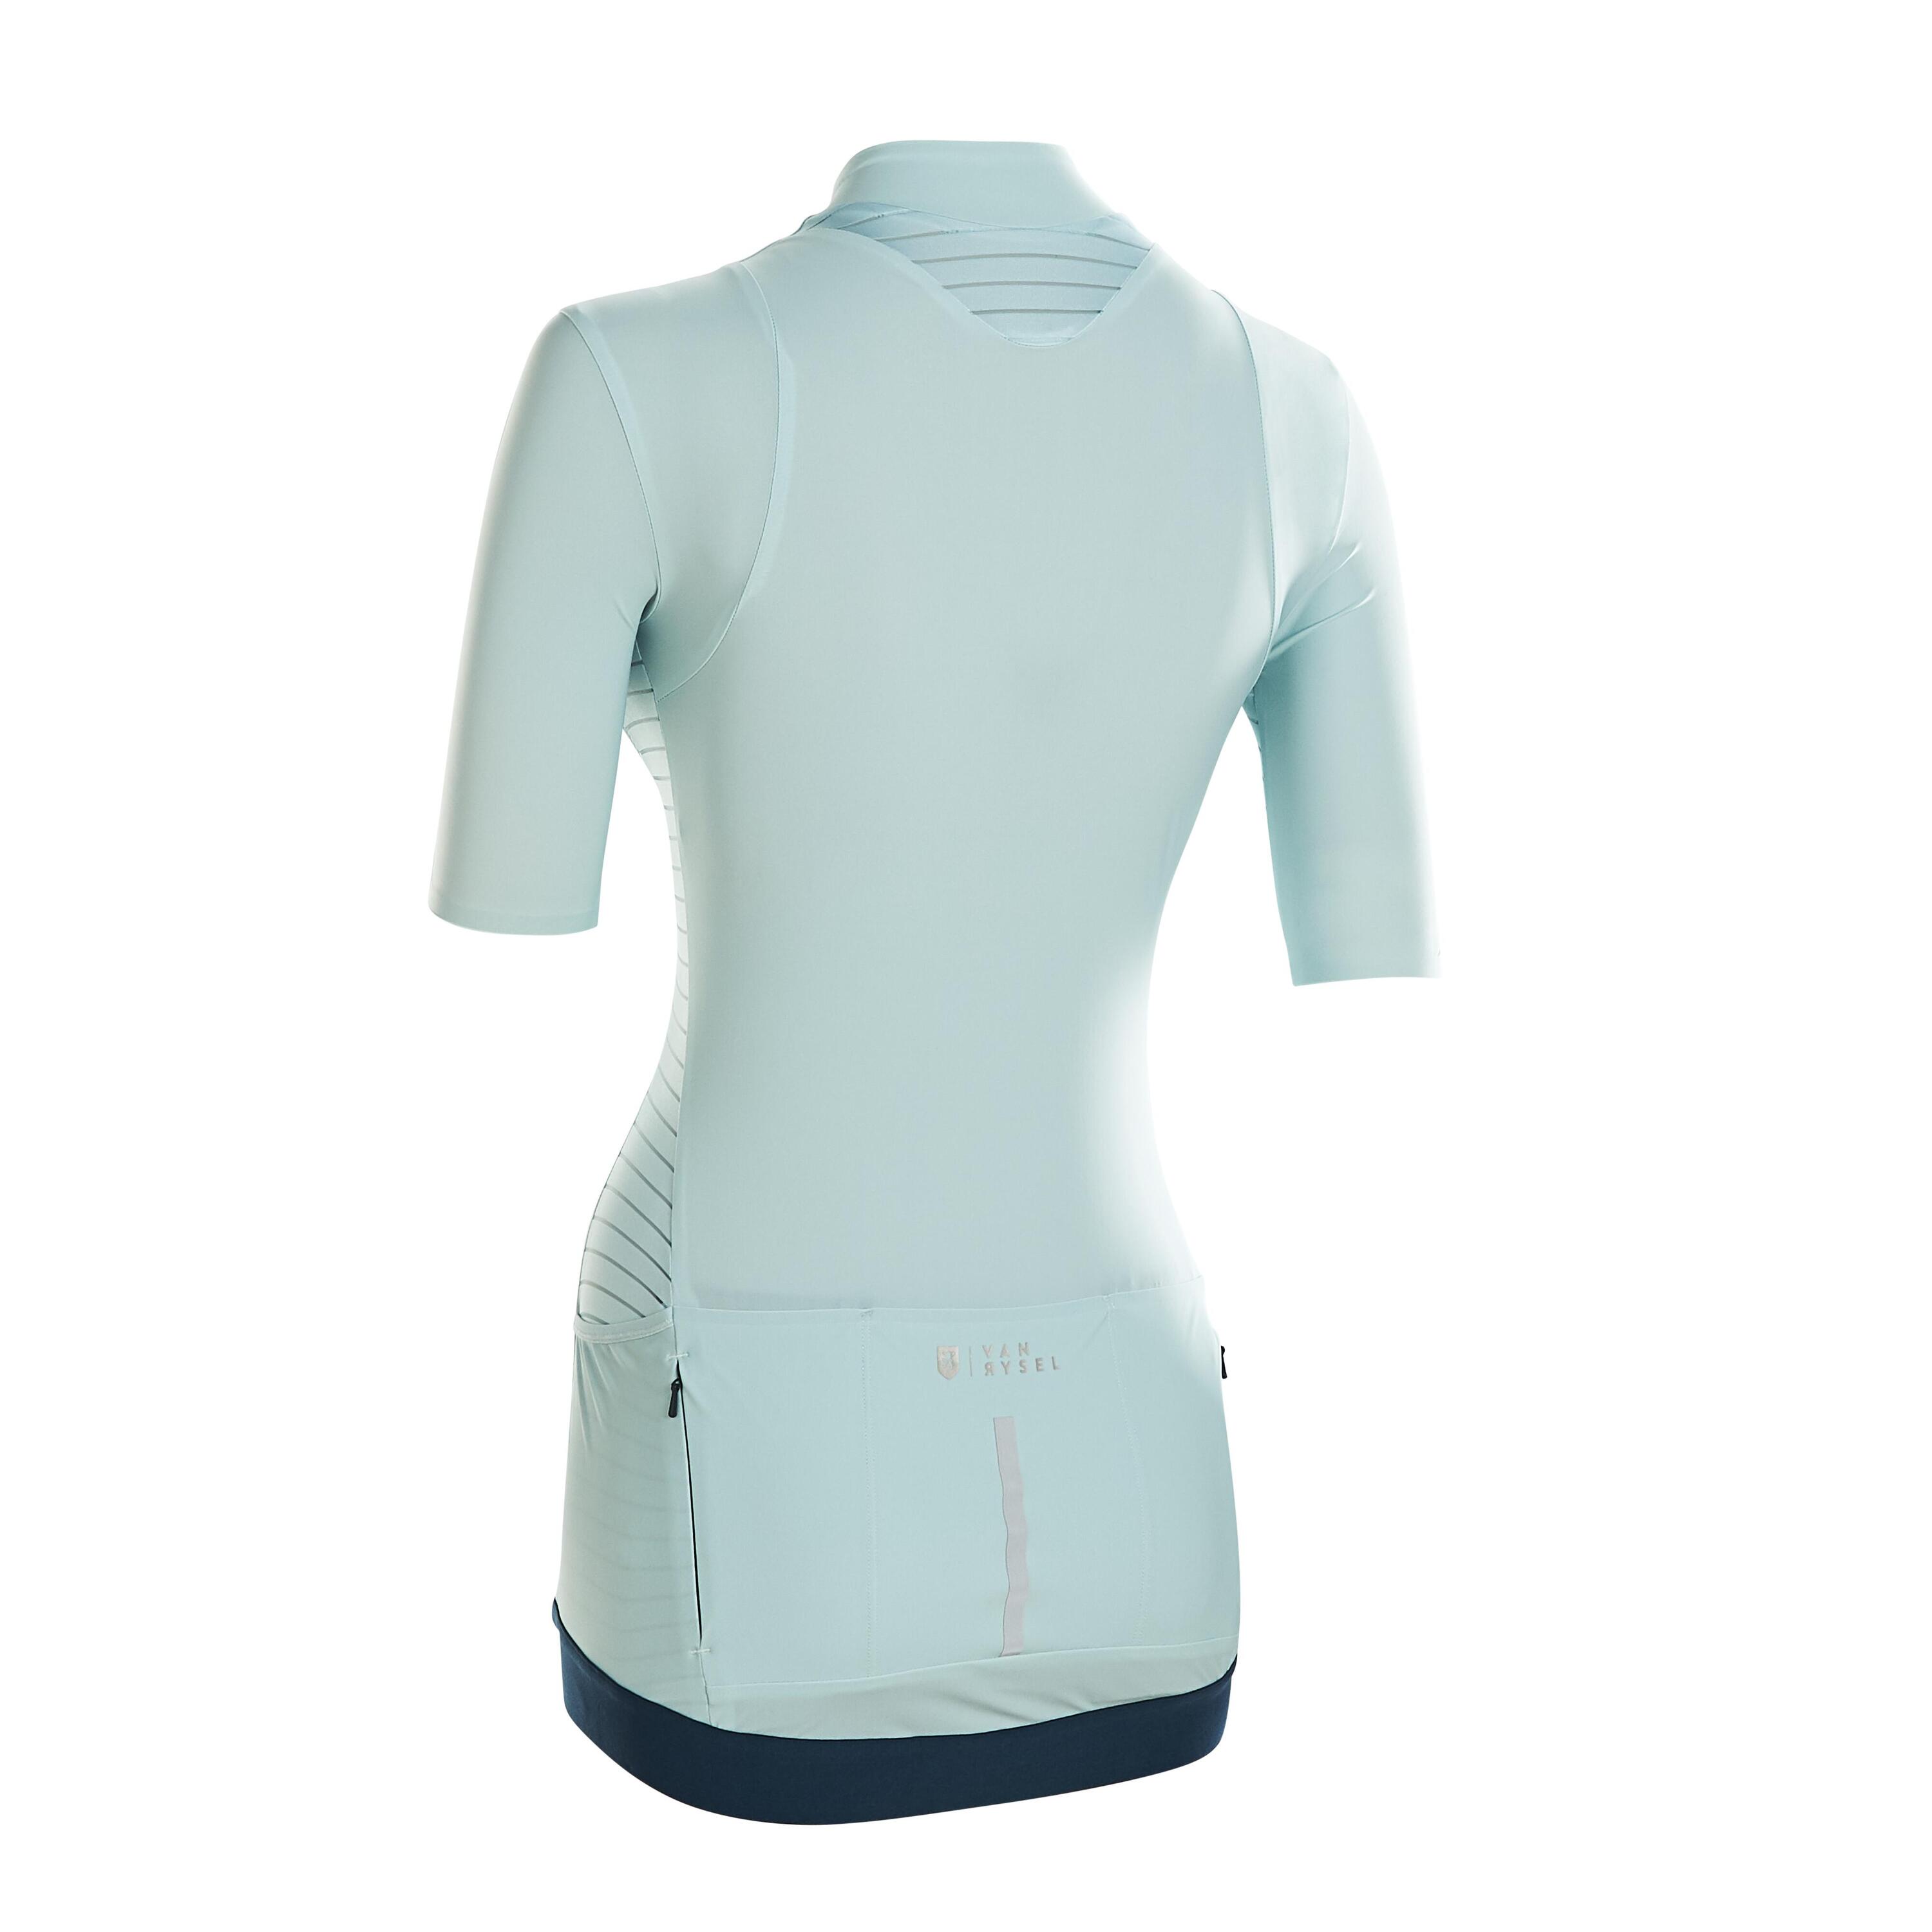 Women's Cycling Short-Sleeved Jersey RCR - Mint/Cross 3/5